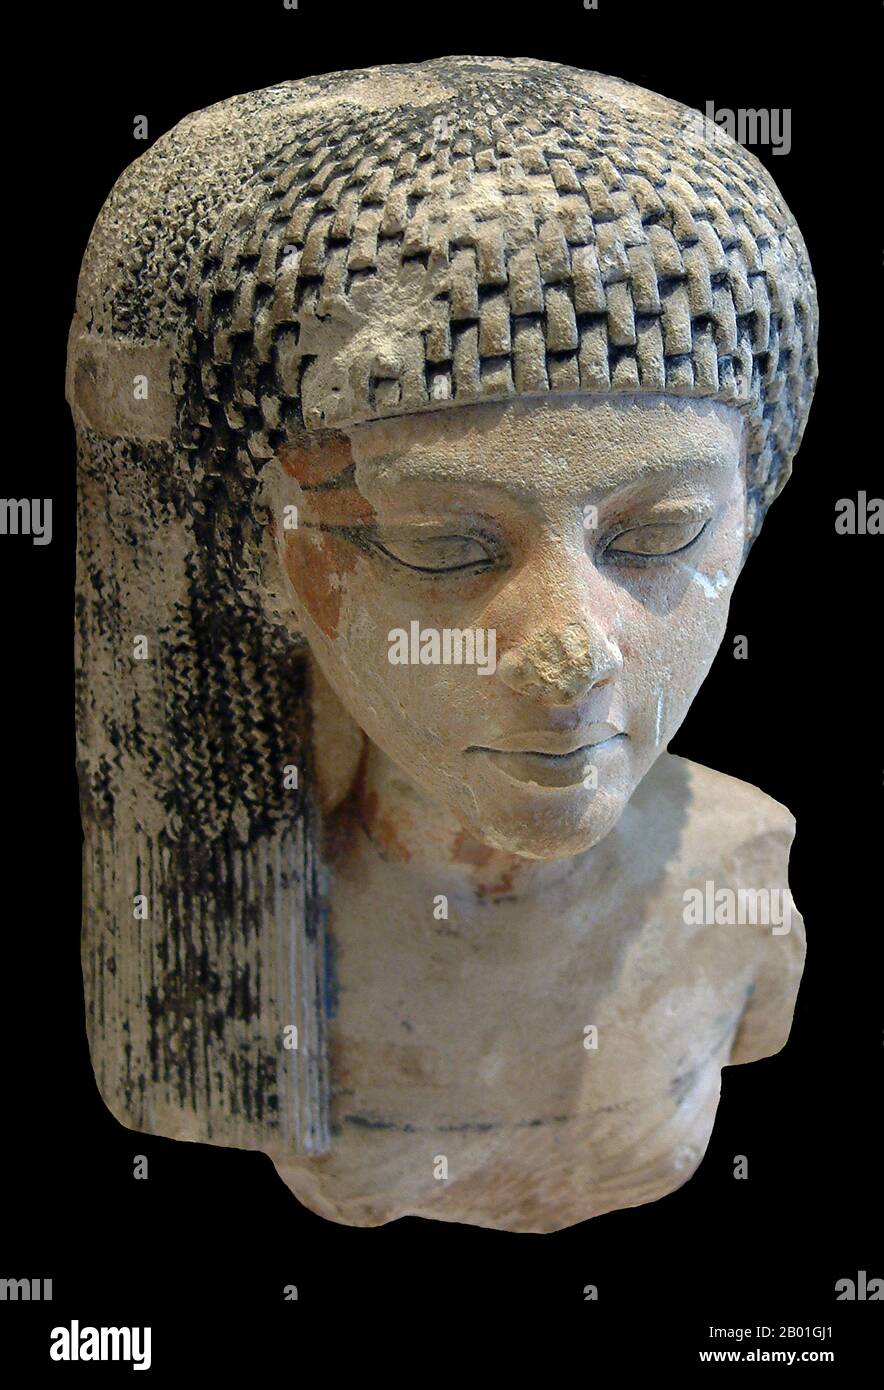 Egitto: Meritaten, antica regina egiziana della diciottesima dinastia. Busto di calcare, c. 1351-1332 a.C. Foto di Aoineko (licenza CC BY-SA 3,0). Meritaten, anche detto Merytaten o Meryetaten, era un'antica regina egiziana che deteneva la posizione di grande moglie reale del faraone Smenkhkare, che potrebbe essere stato un fratello o un figlio di Akhenaten. Il suo nome significa 'Colei che è amata da Aten', Aten essendo il Dio-sole che suo padre adorava. Meritaten può anche essere servito come faraone a suo diritto sotto il nome Ankhkhkhkhheperure Neferneferuaten. Foto Stock